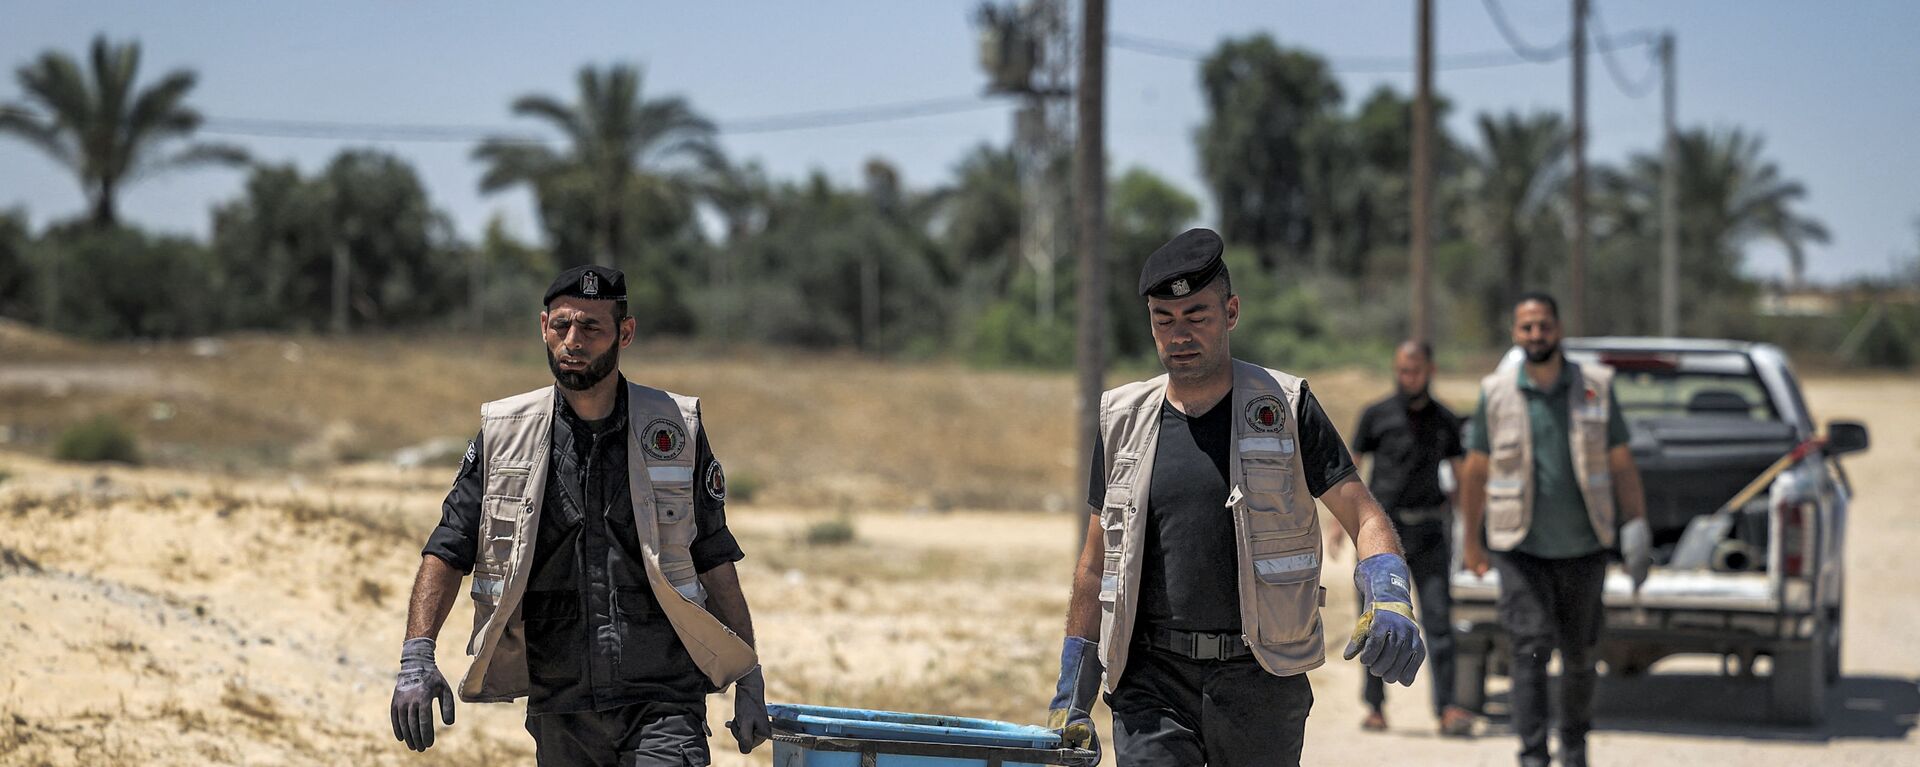 خبراء المتفجرات من حماس يقومون بإزالة قنابل وصواريخ قوات الطيران الحربي التي لم تنفجر في خان يونس، بعد تبادل إطلاق النار بين قطاع غزة وإسرائيل في مايو الماضي، 5 يونيو 2021 - سبوتنيك عربي, 1920, 12.12.2021